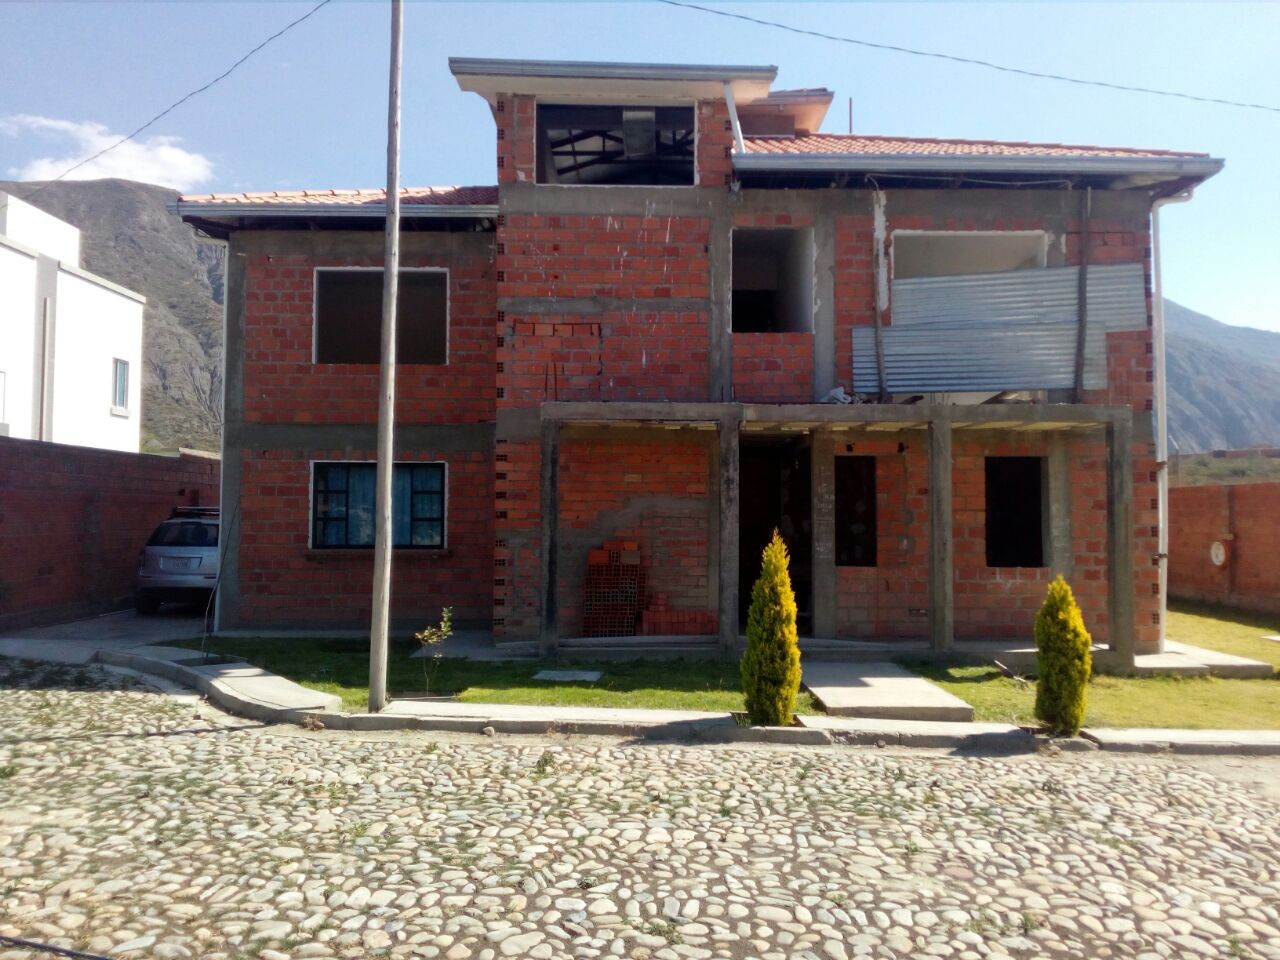 Casa Taipichullo a 700 mts de Huajchilla, Rio Abajo. Condominio 